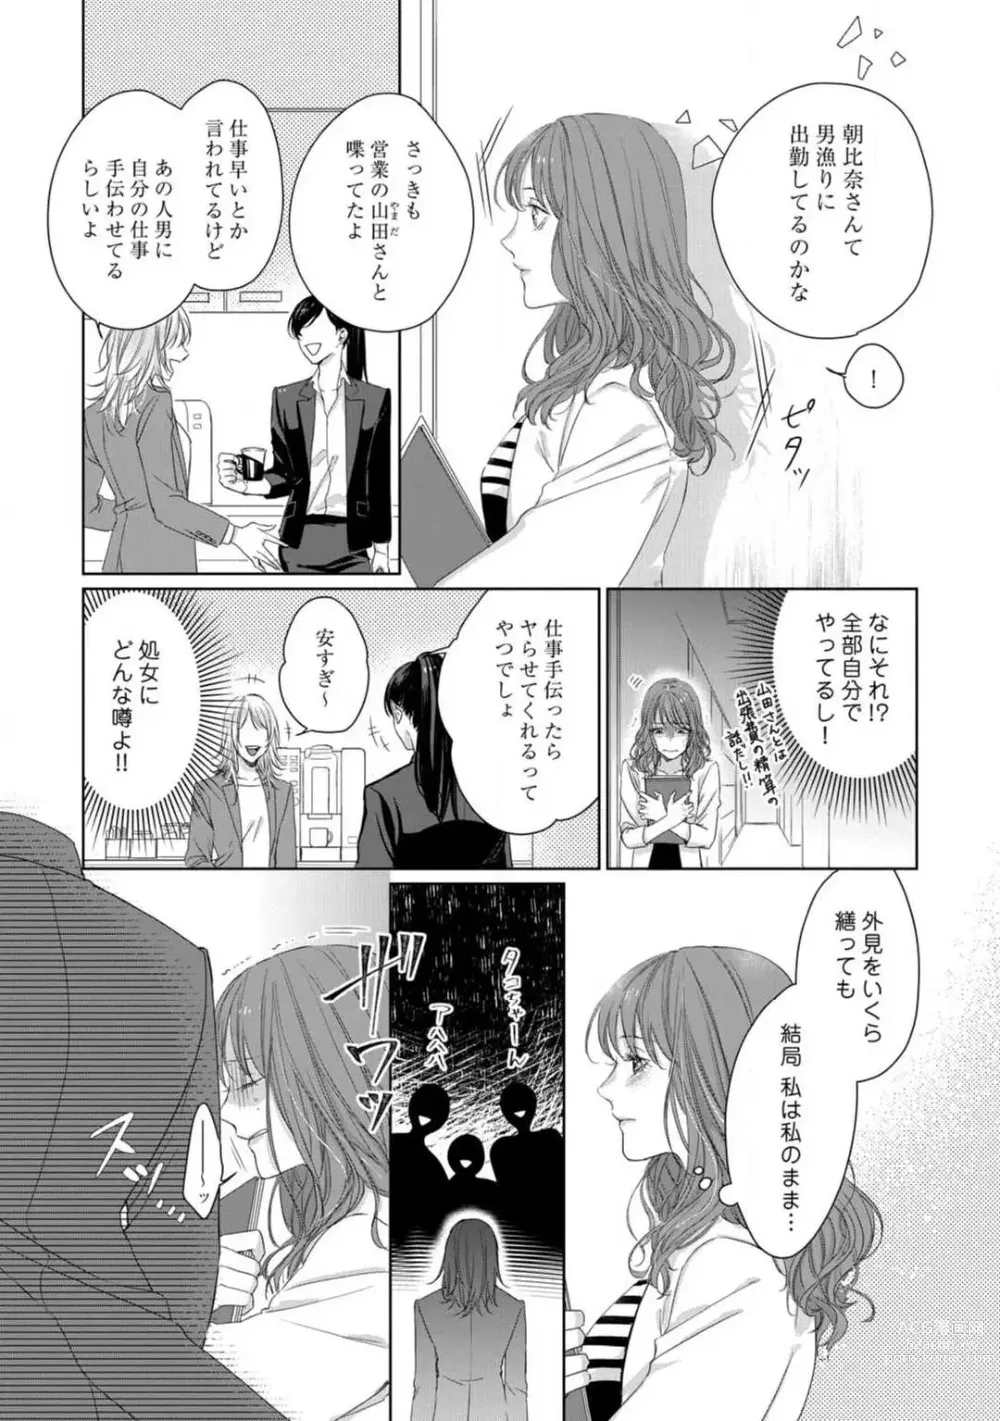 Page 8 of manga Anata no Koisuru Kiraina Watashi~Chp.1-4